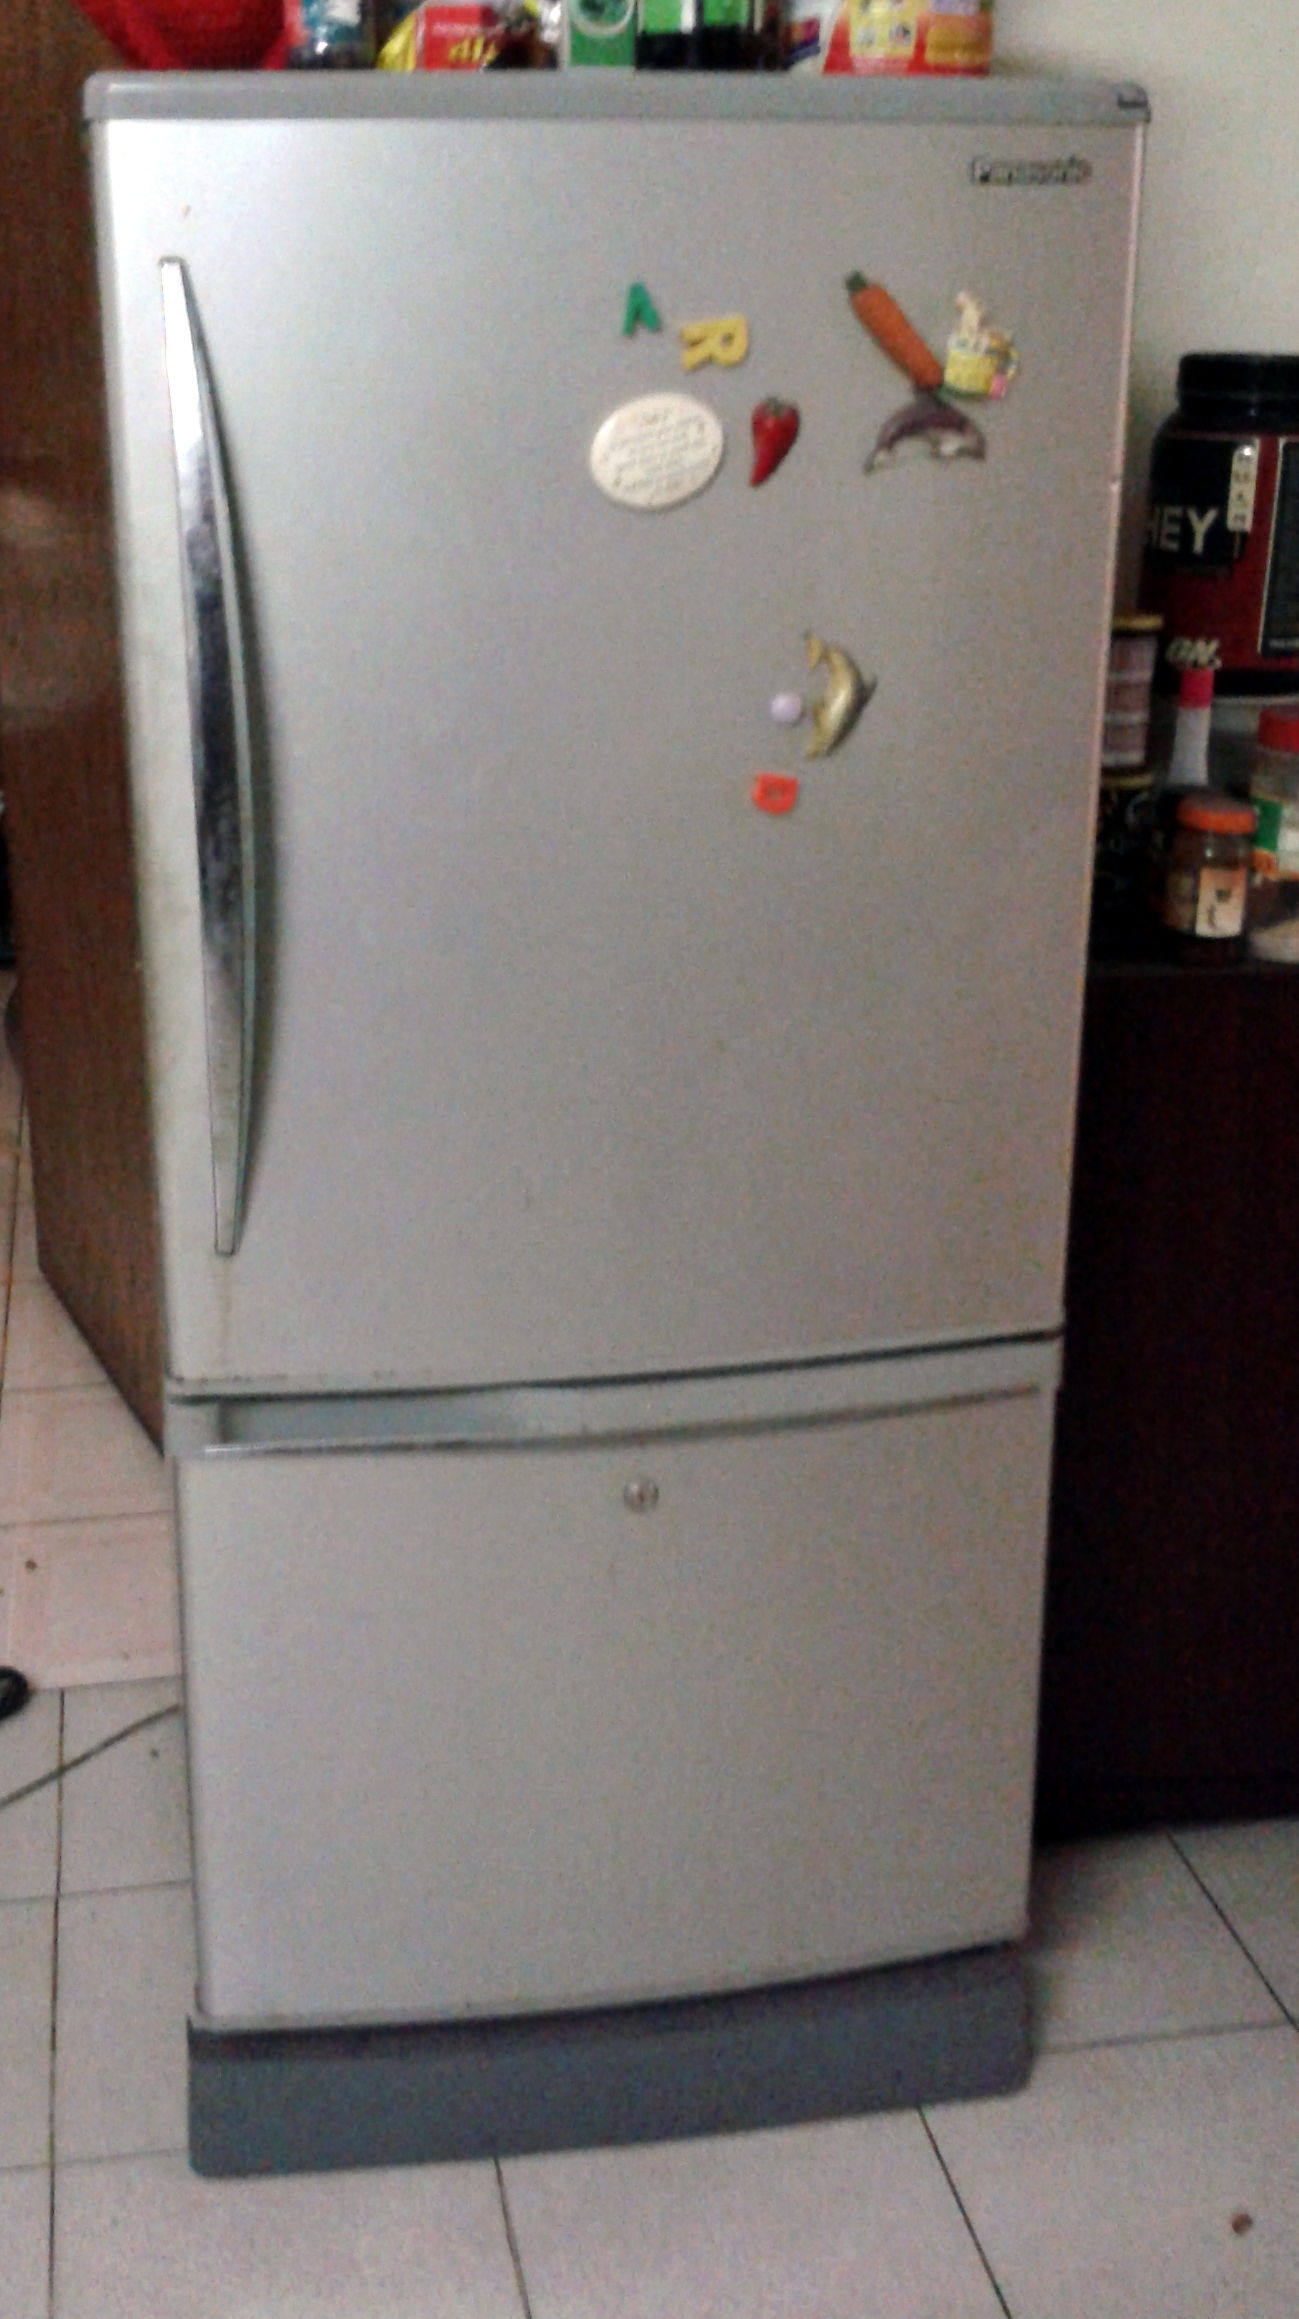 Panasonic eco friendly fridge large image 0